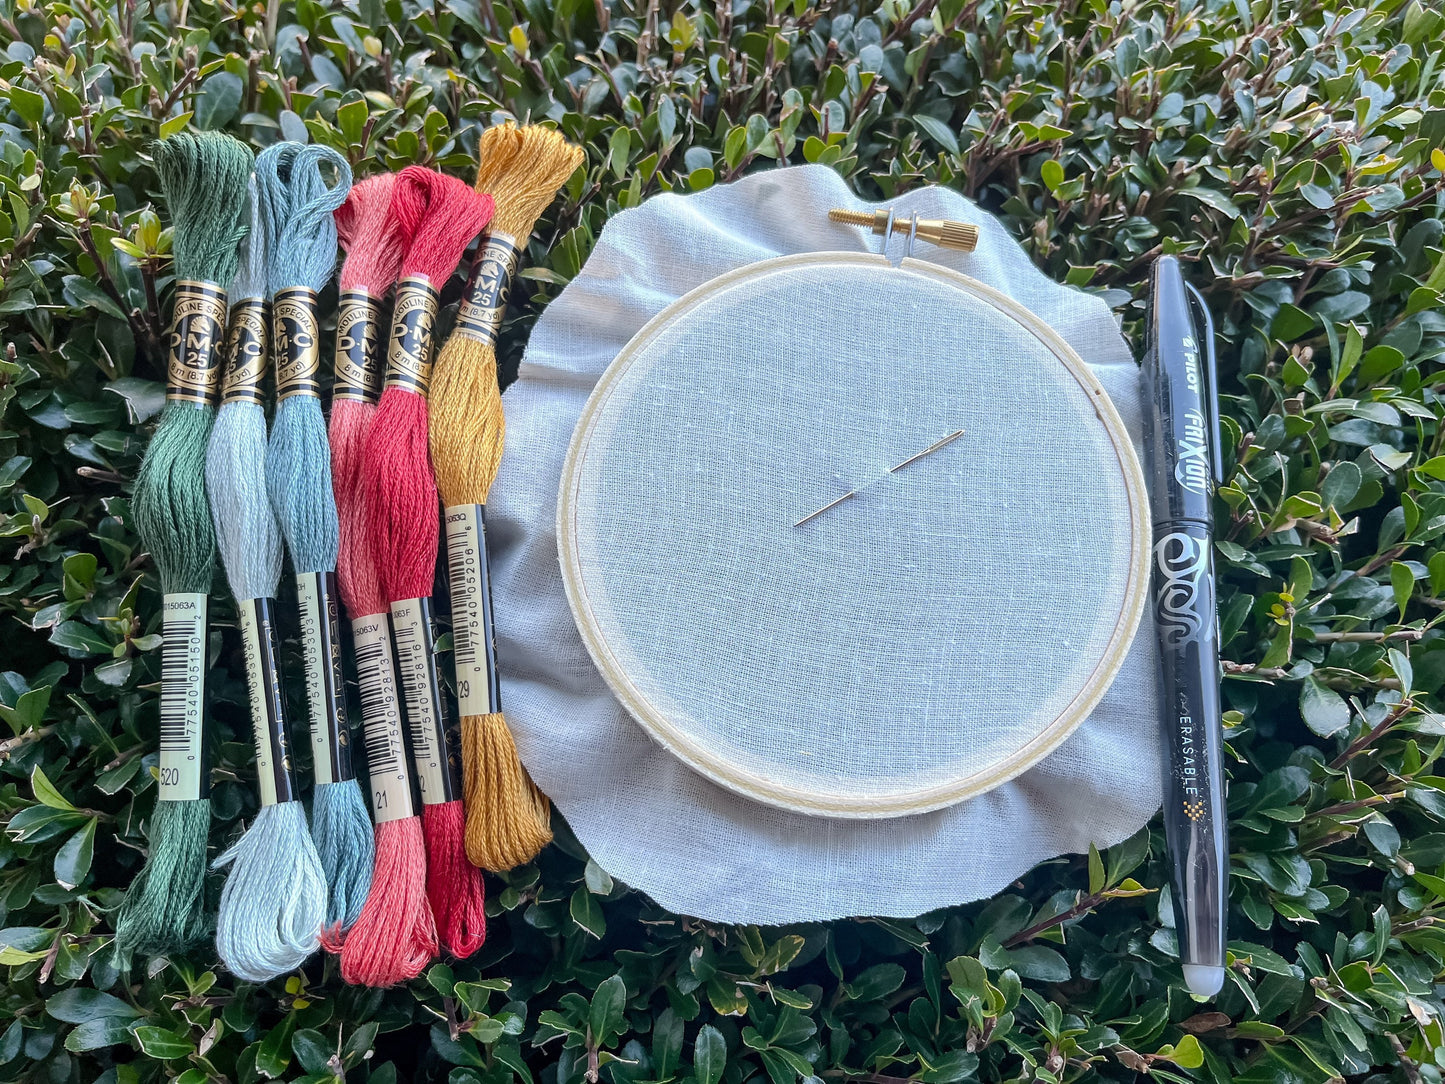 FULL KIT - Beginner's Bloom Embroidery Kit - DIY Embroidery Kit, Floral Embroidery, Embroidery Pattern